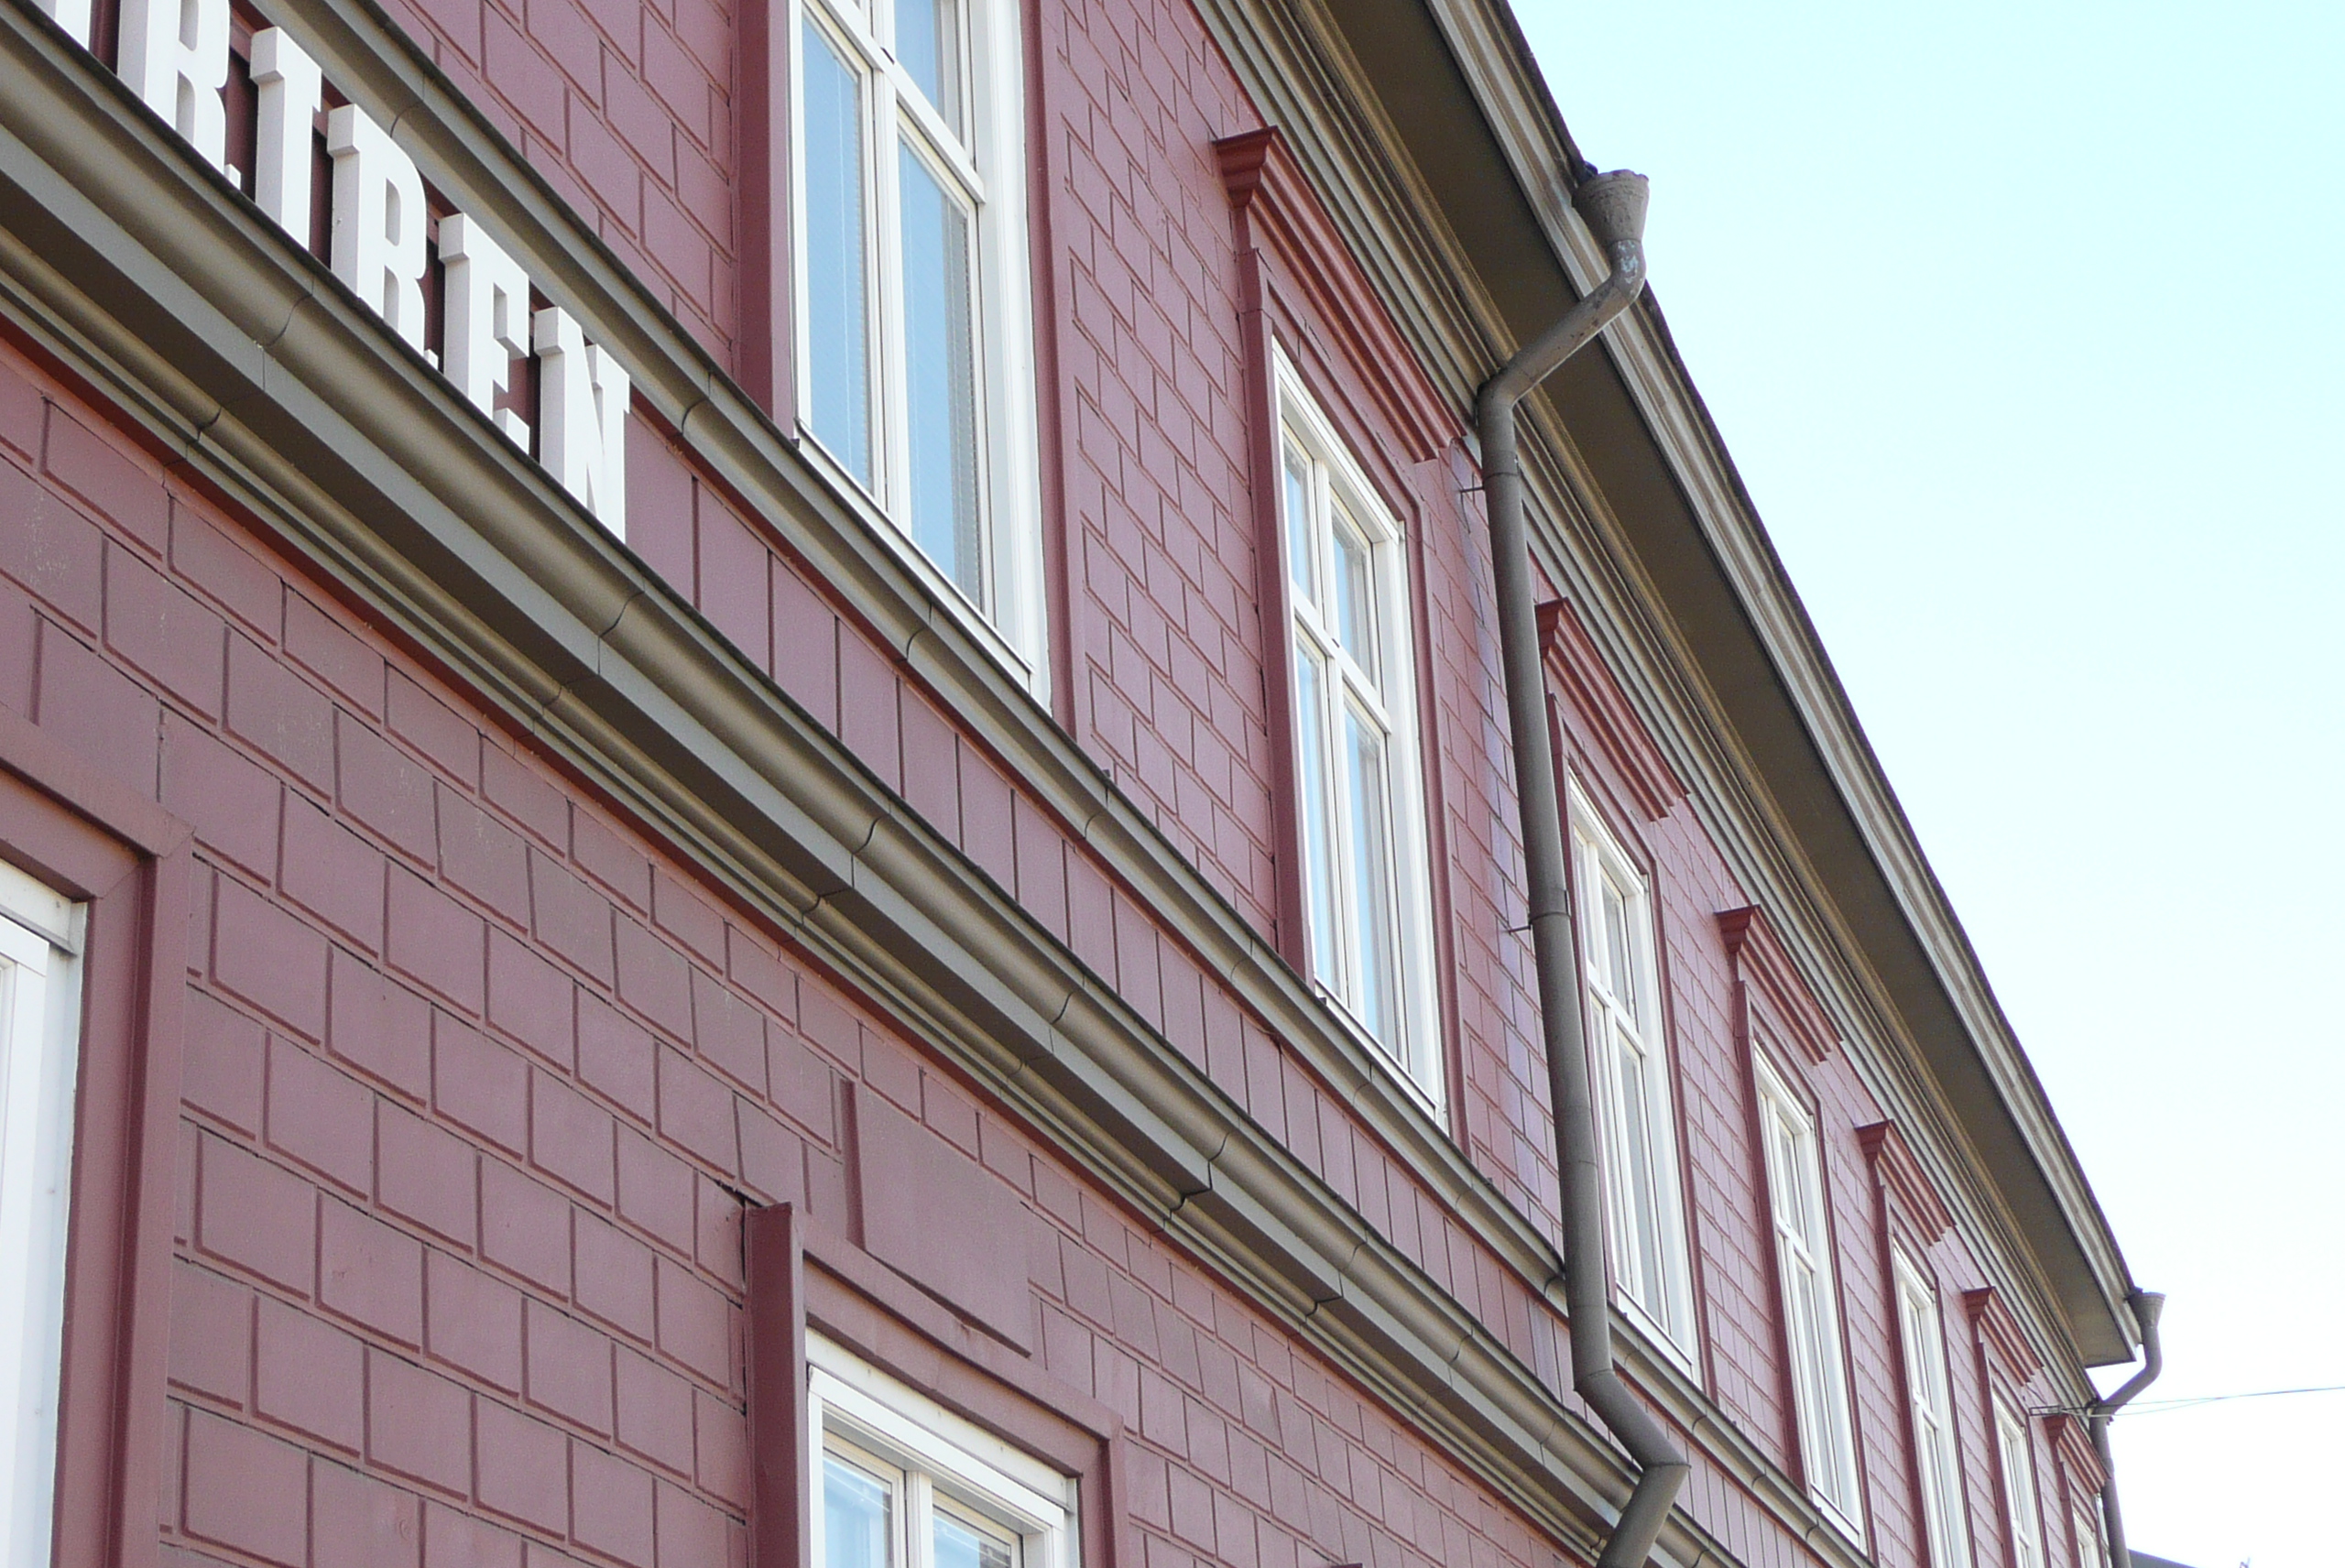 Fasad f.d Norrbottens kuriren